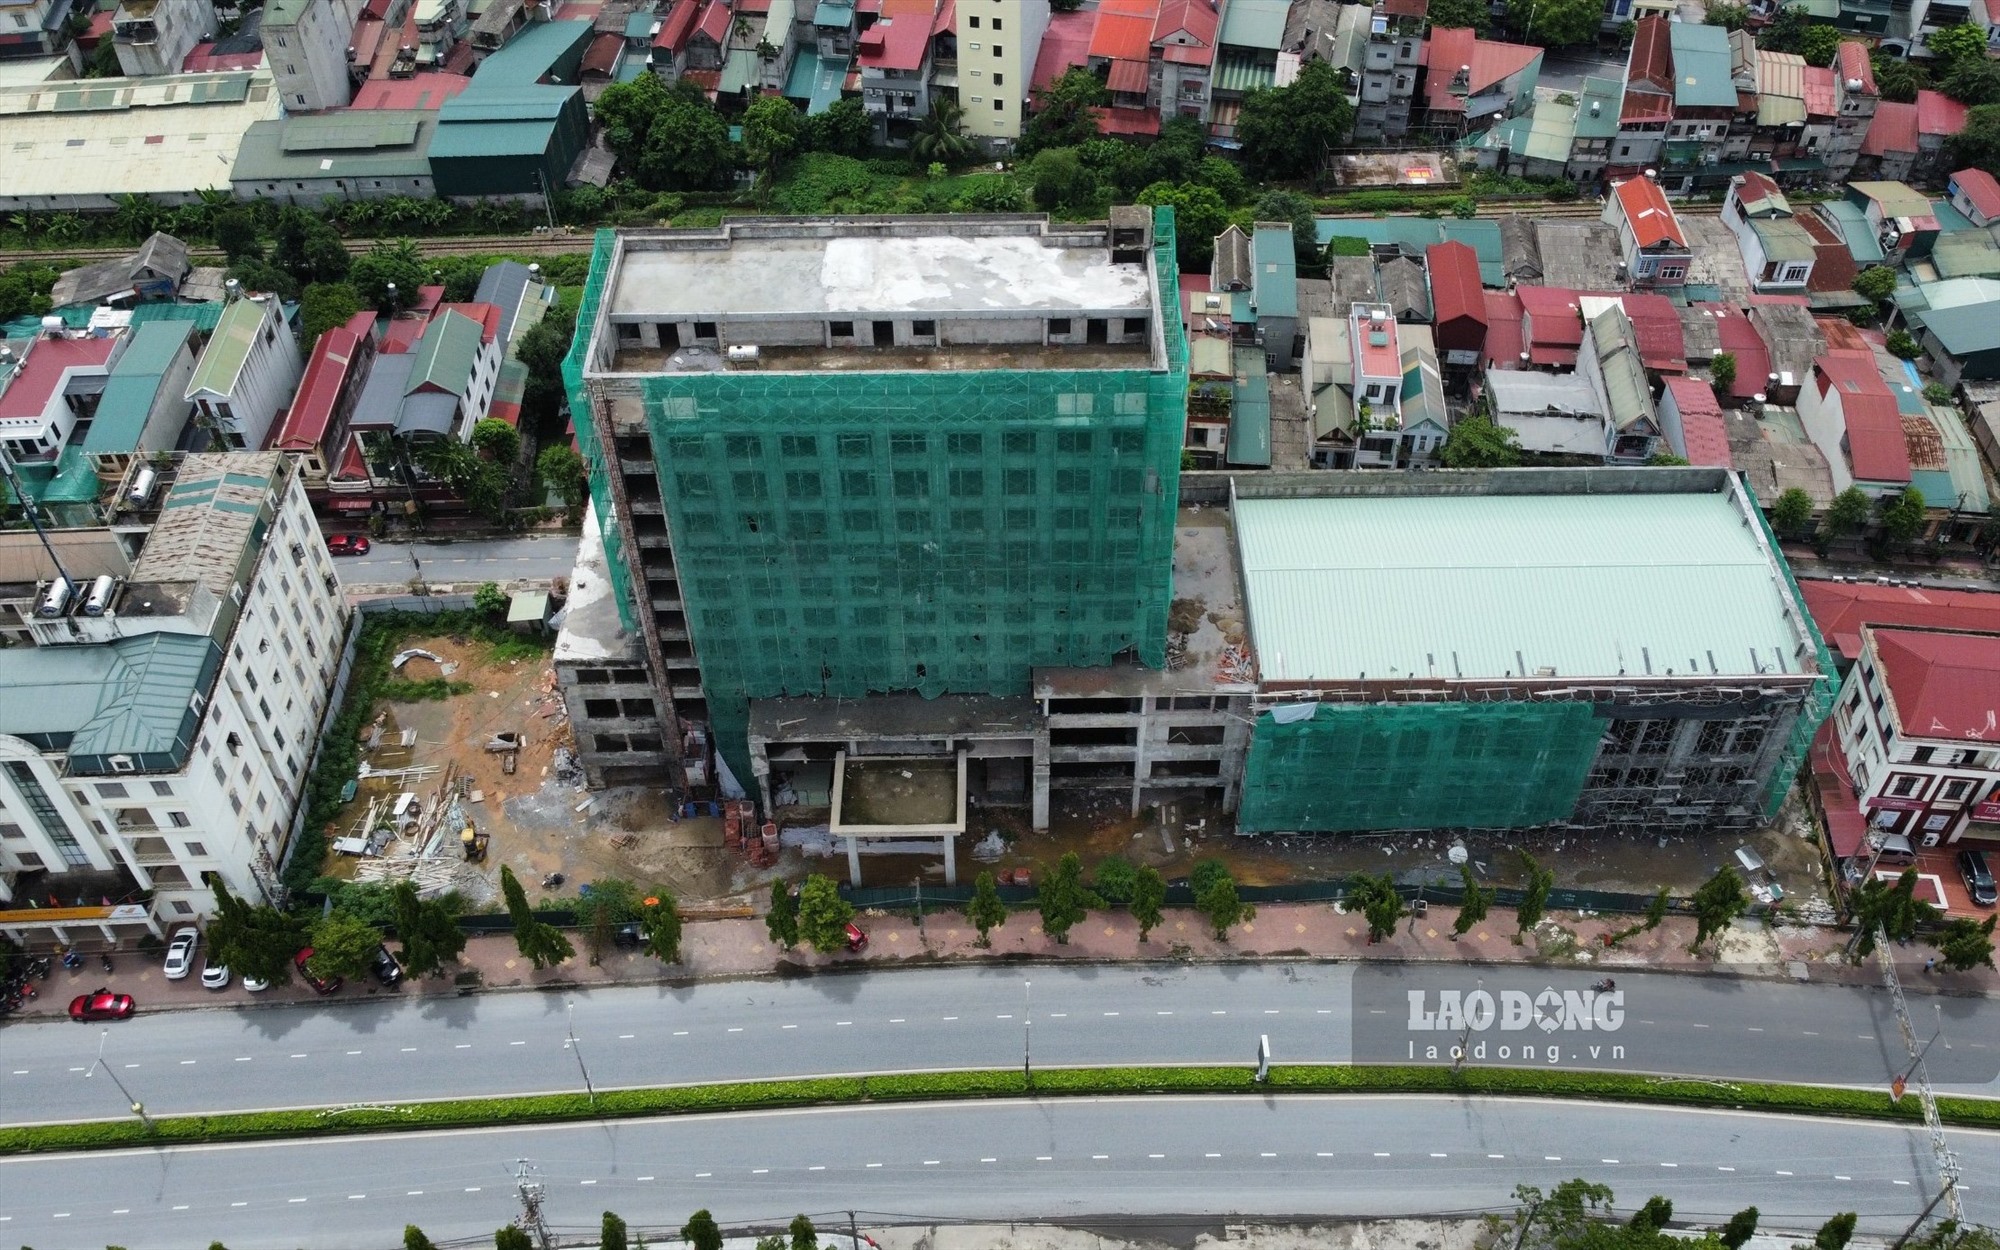 Ngày 6/8/2018 UBND tỉnh Yên Bái đã chấp thuận chủ trương cho phép Công ty TNHH tổng công ty Hòa Bình Minh kéo dài thời gian xây dựng cơ bản Dự án khách sạn du lịch, Dịch vụ tổng hợp Hòa Bình Minh 3 sao đến ngày 1/7/2019.